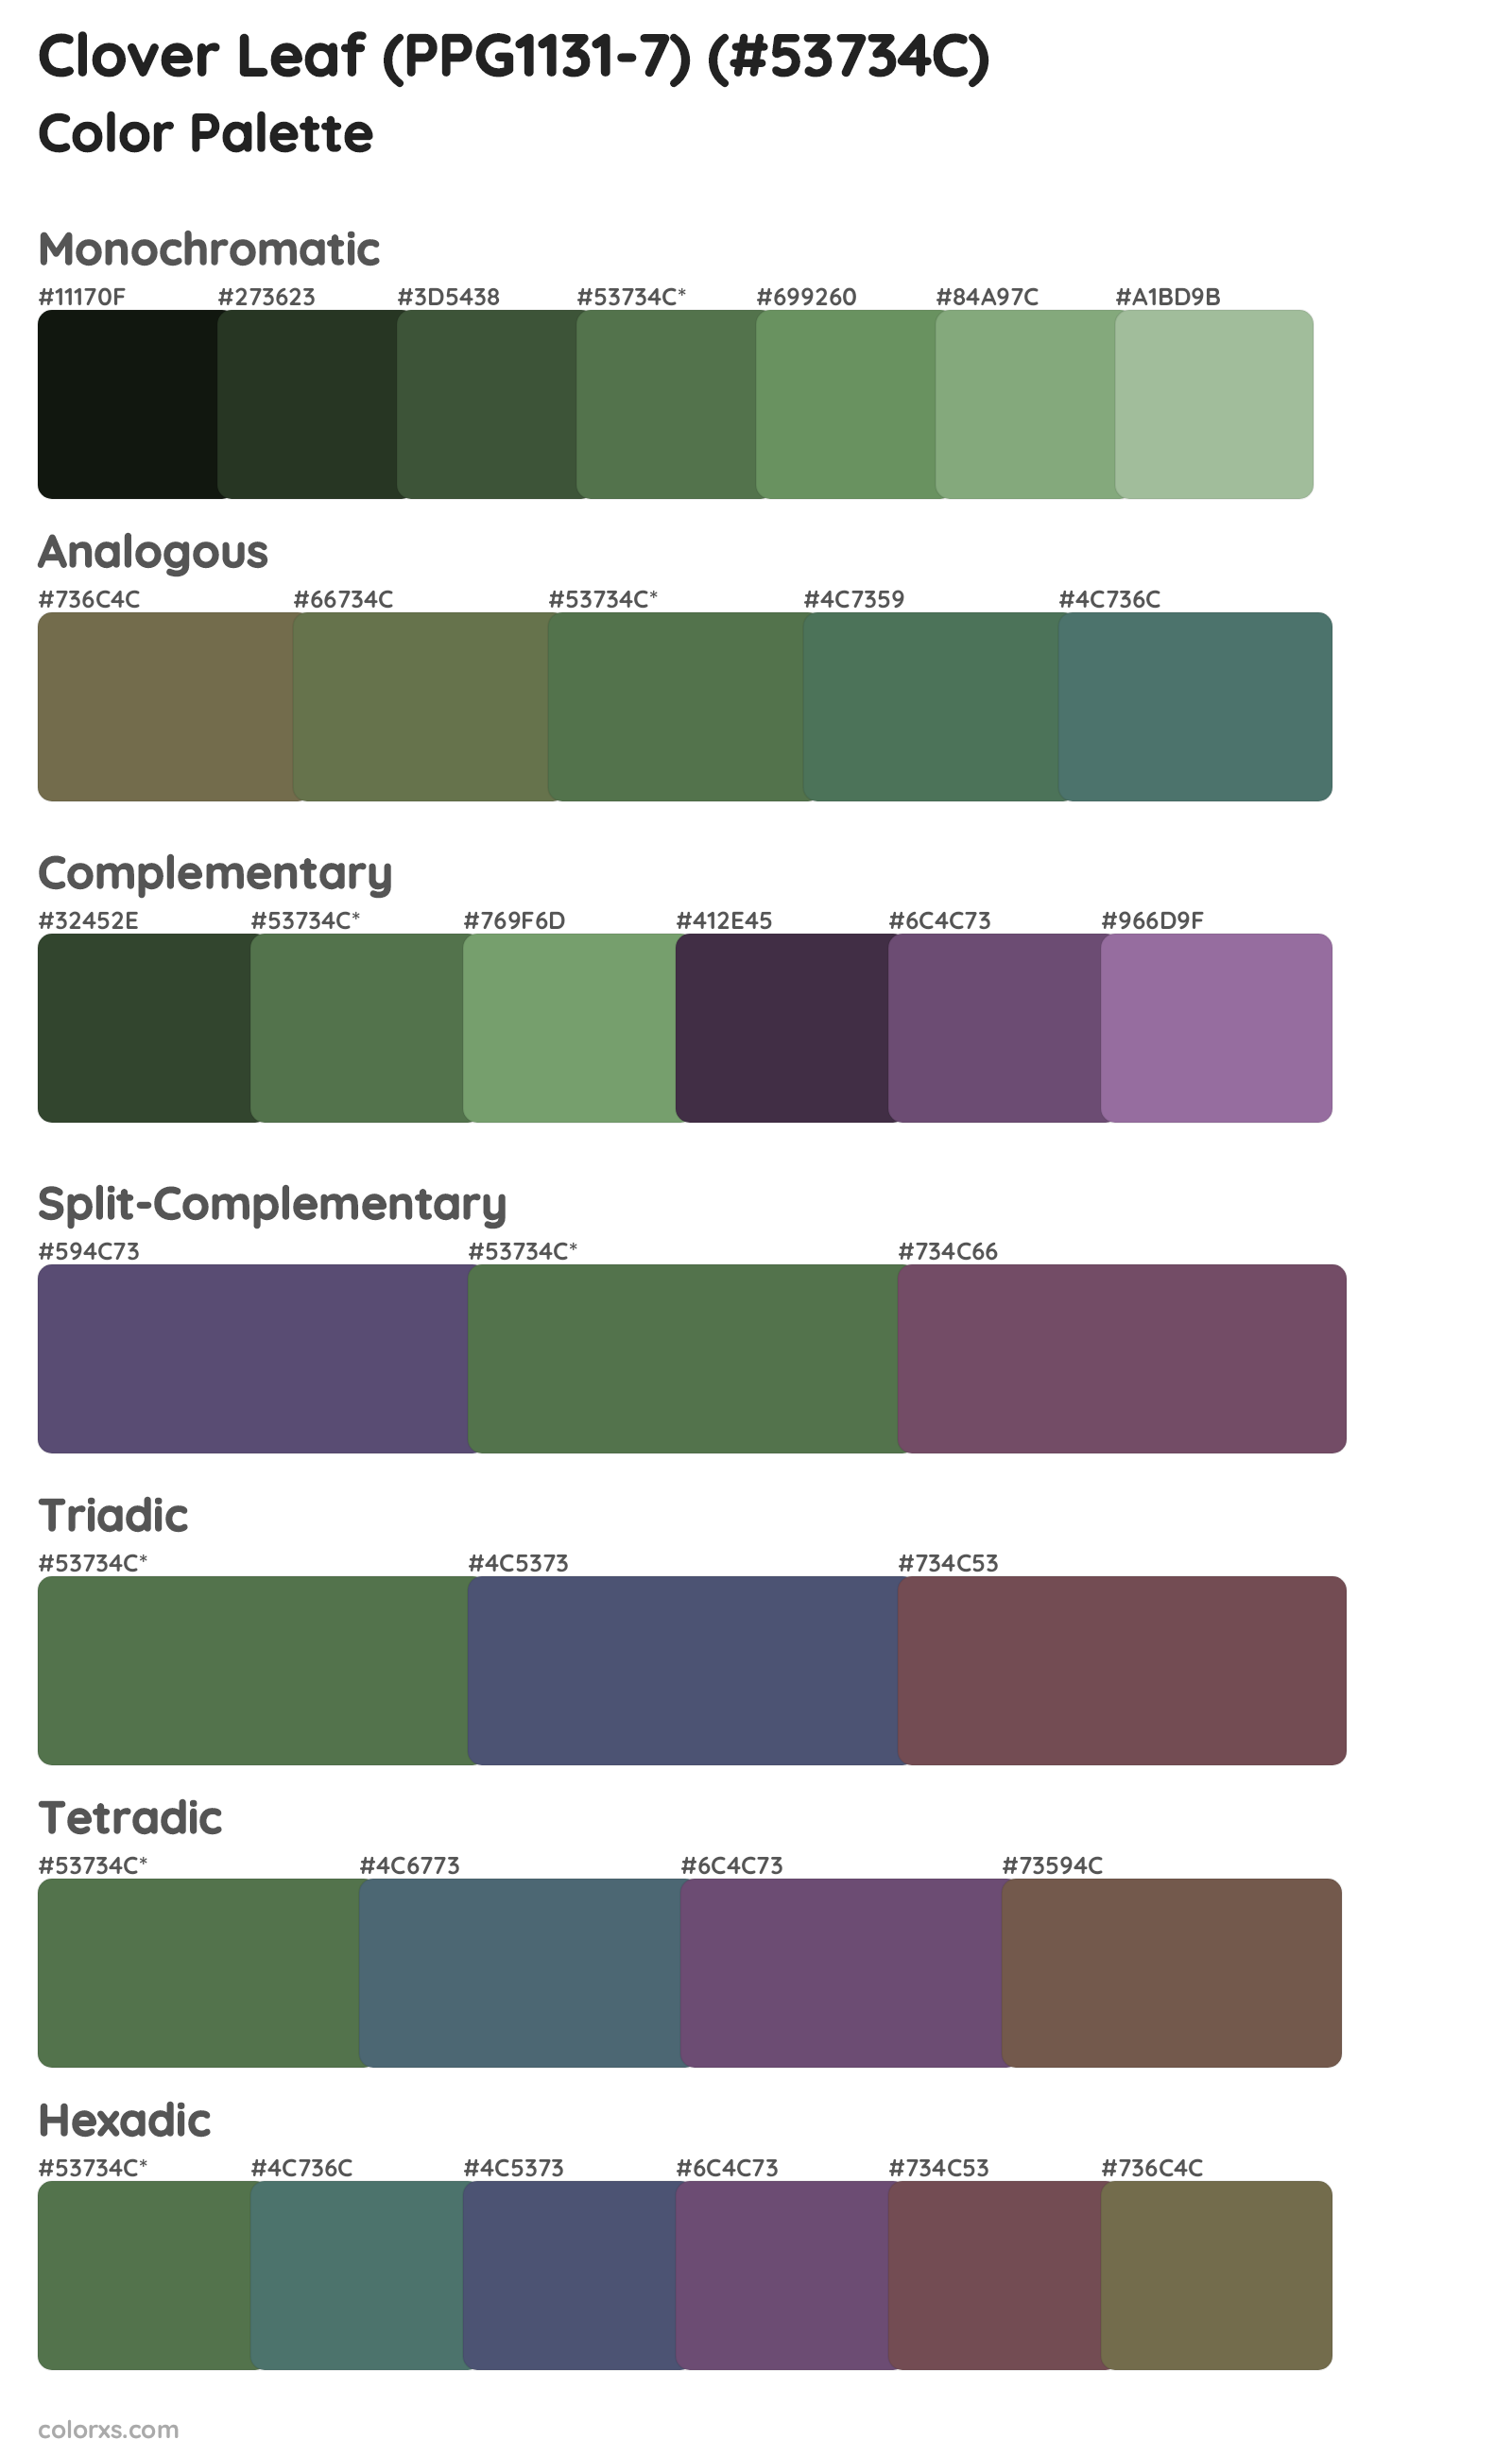 Clover Leaf (PPG1131-7) Color Scheme Palettes